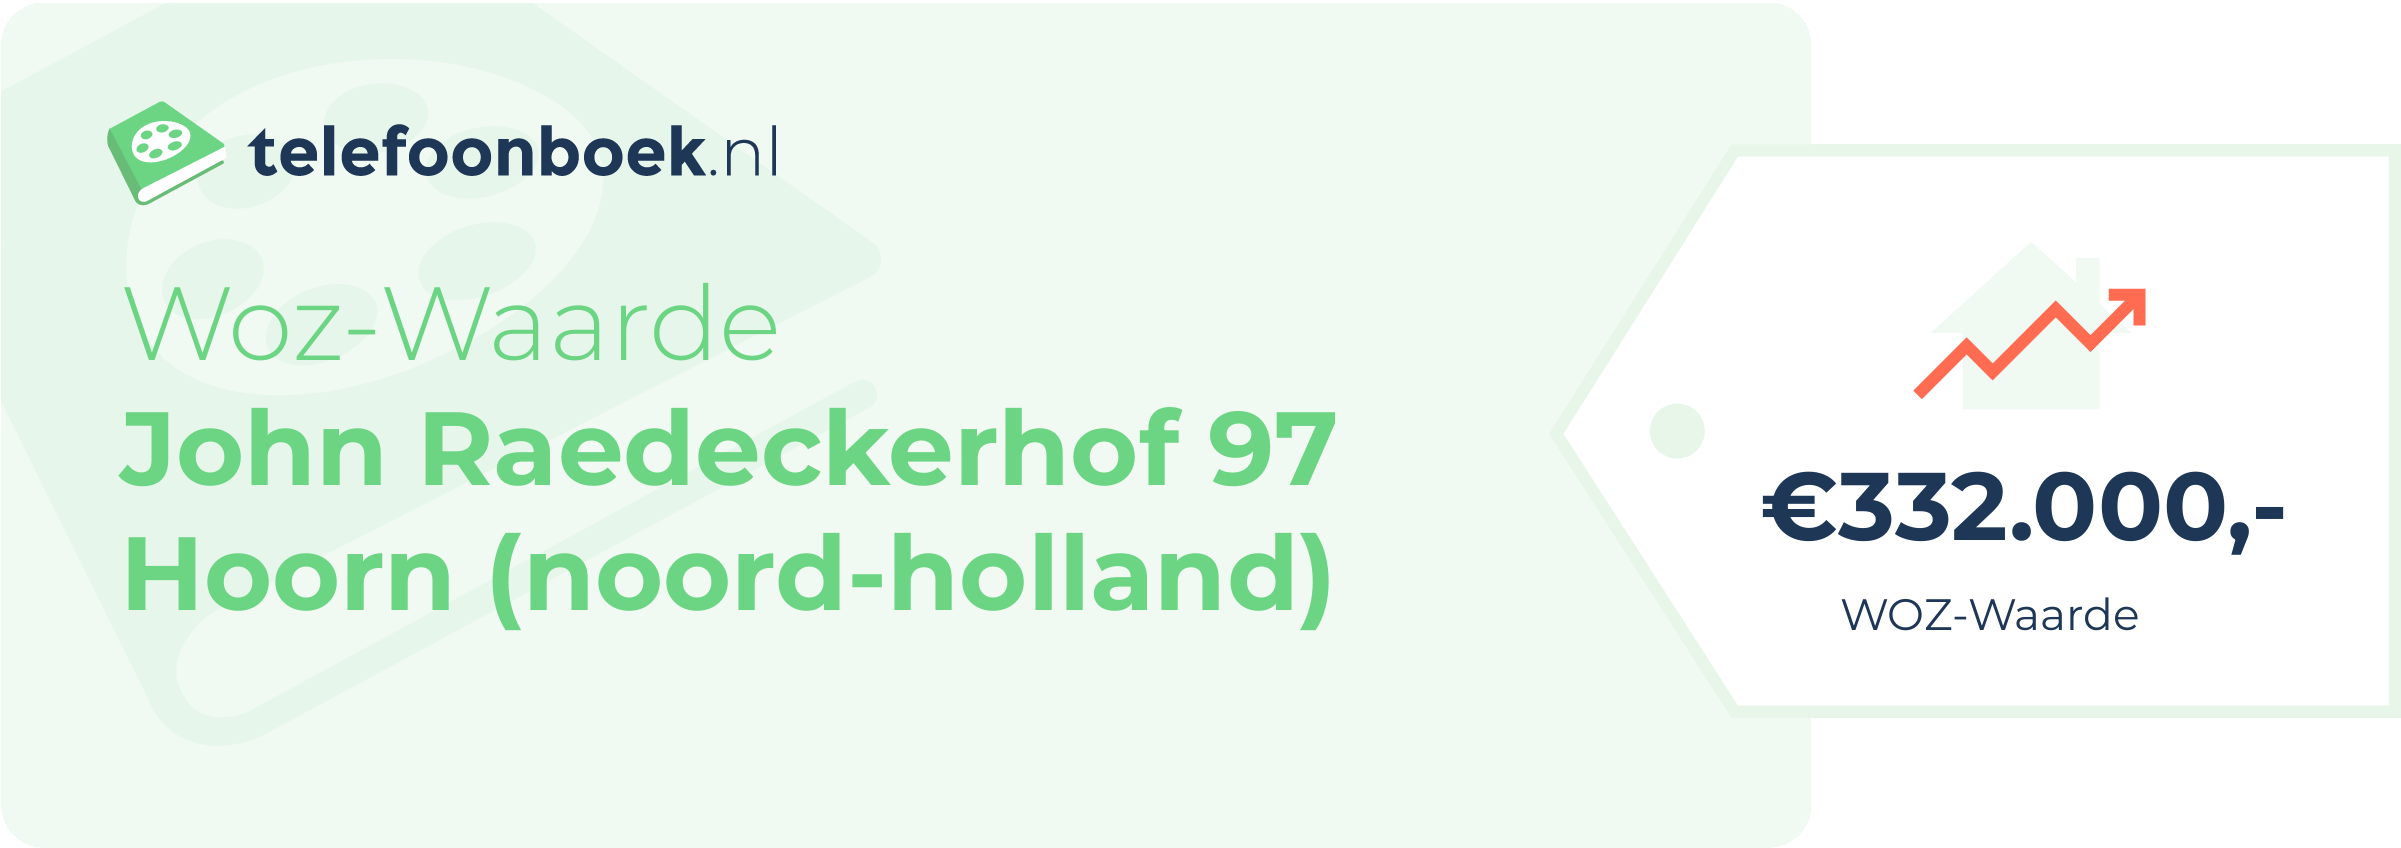 WOZ-waarde John Raedeckerhof 97 Hoorn (Noord-Holland)